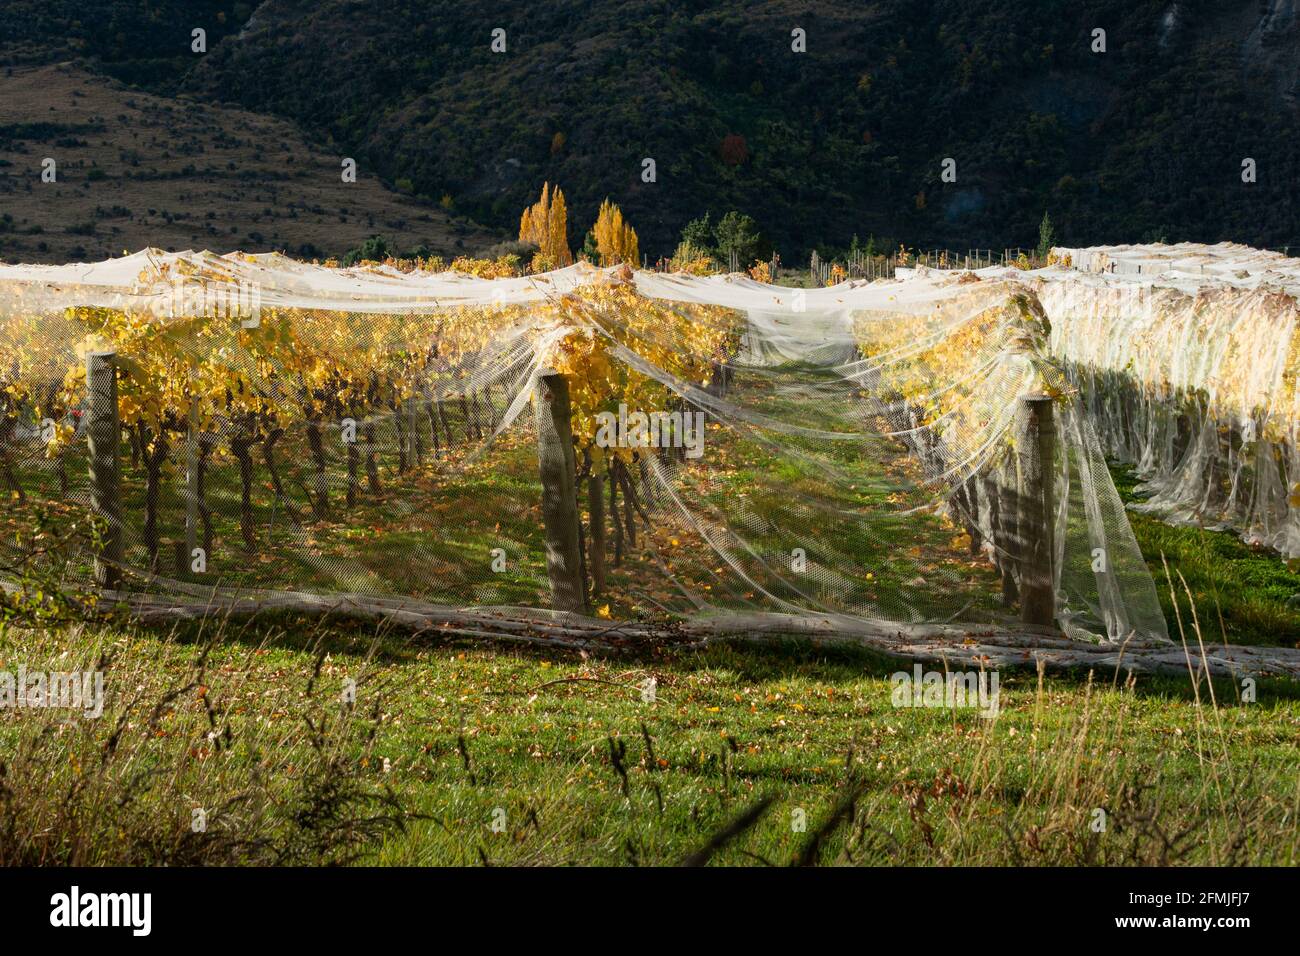 Vernetzungen an gelben Herbstreben, um Vogel- und Windschäden zu verhindern, Region Otago, Südinsel Neuseelands Stockfoto